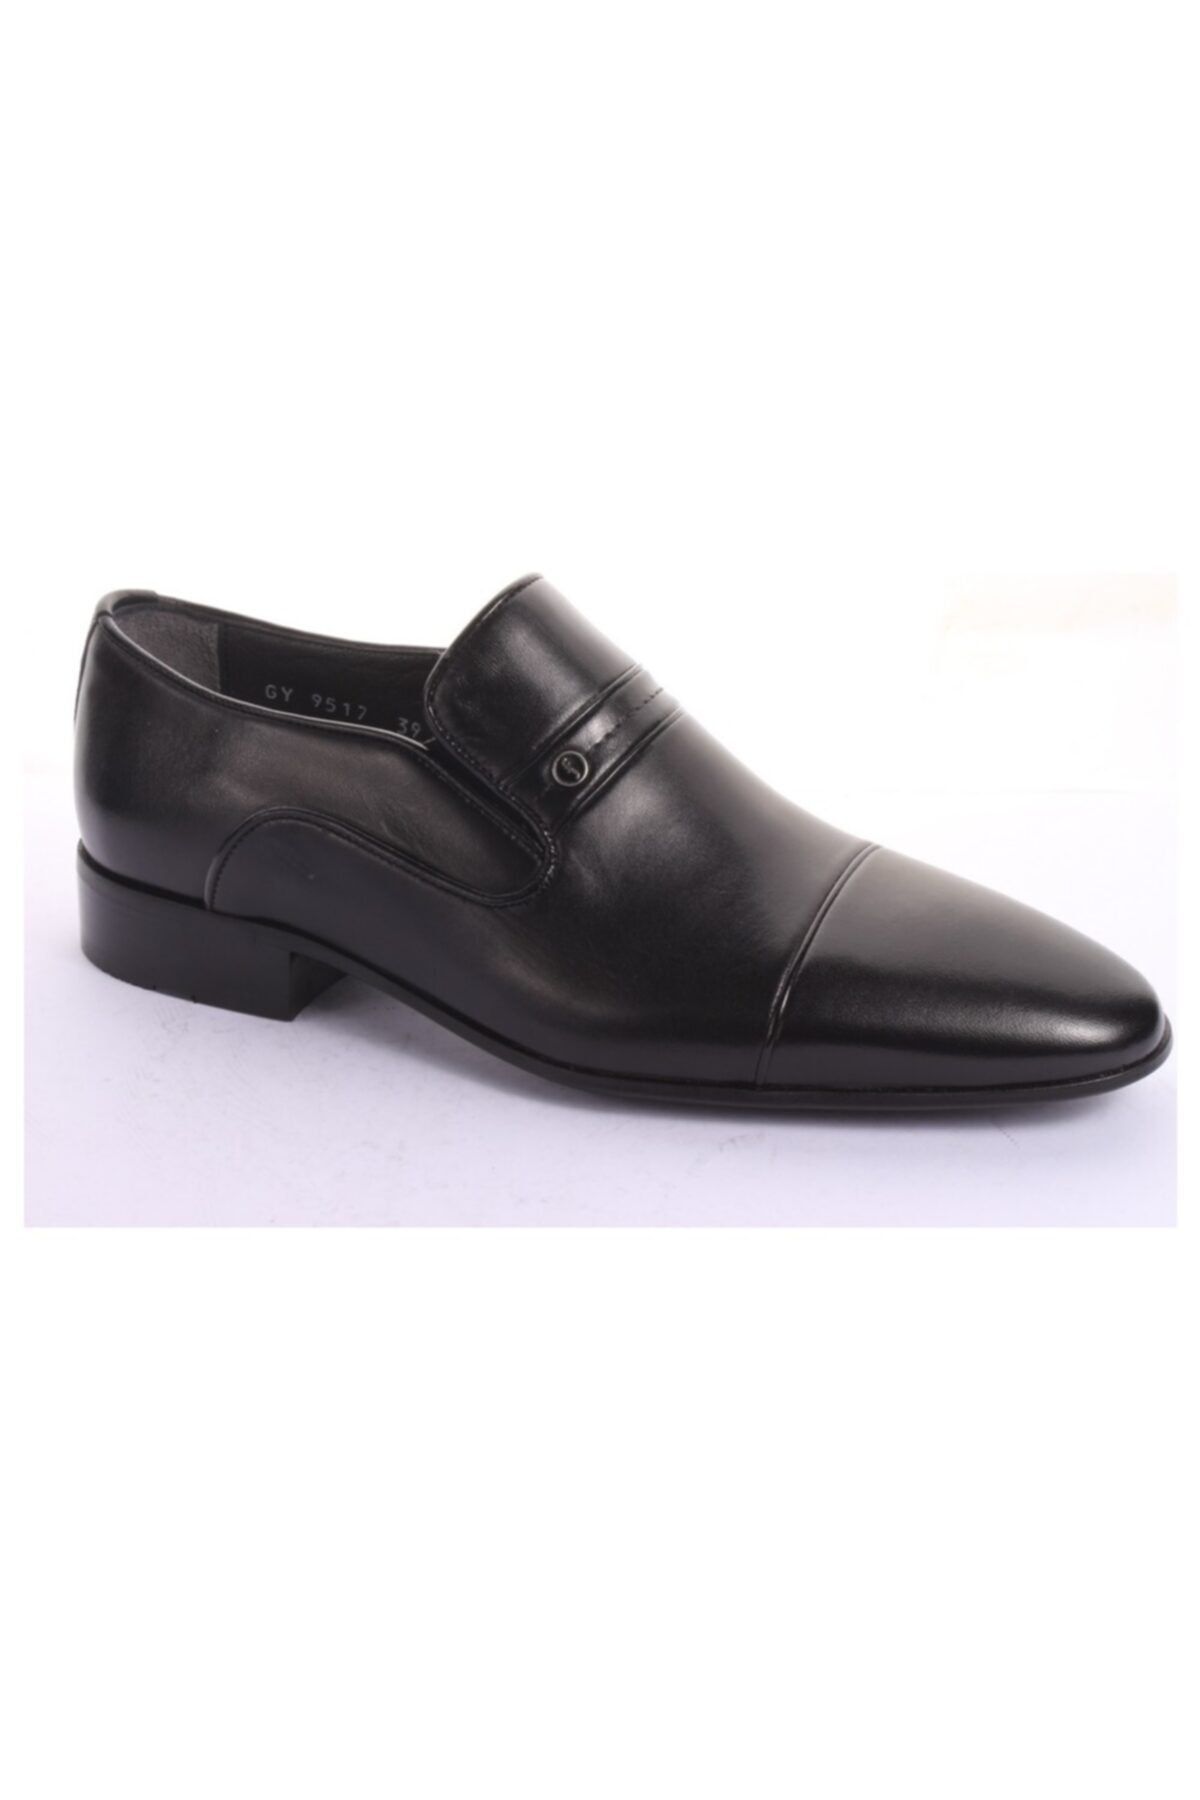 Fosco 9517 Siyah Hakiki Deri Klasik Ayakkabı